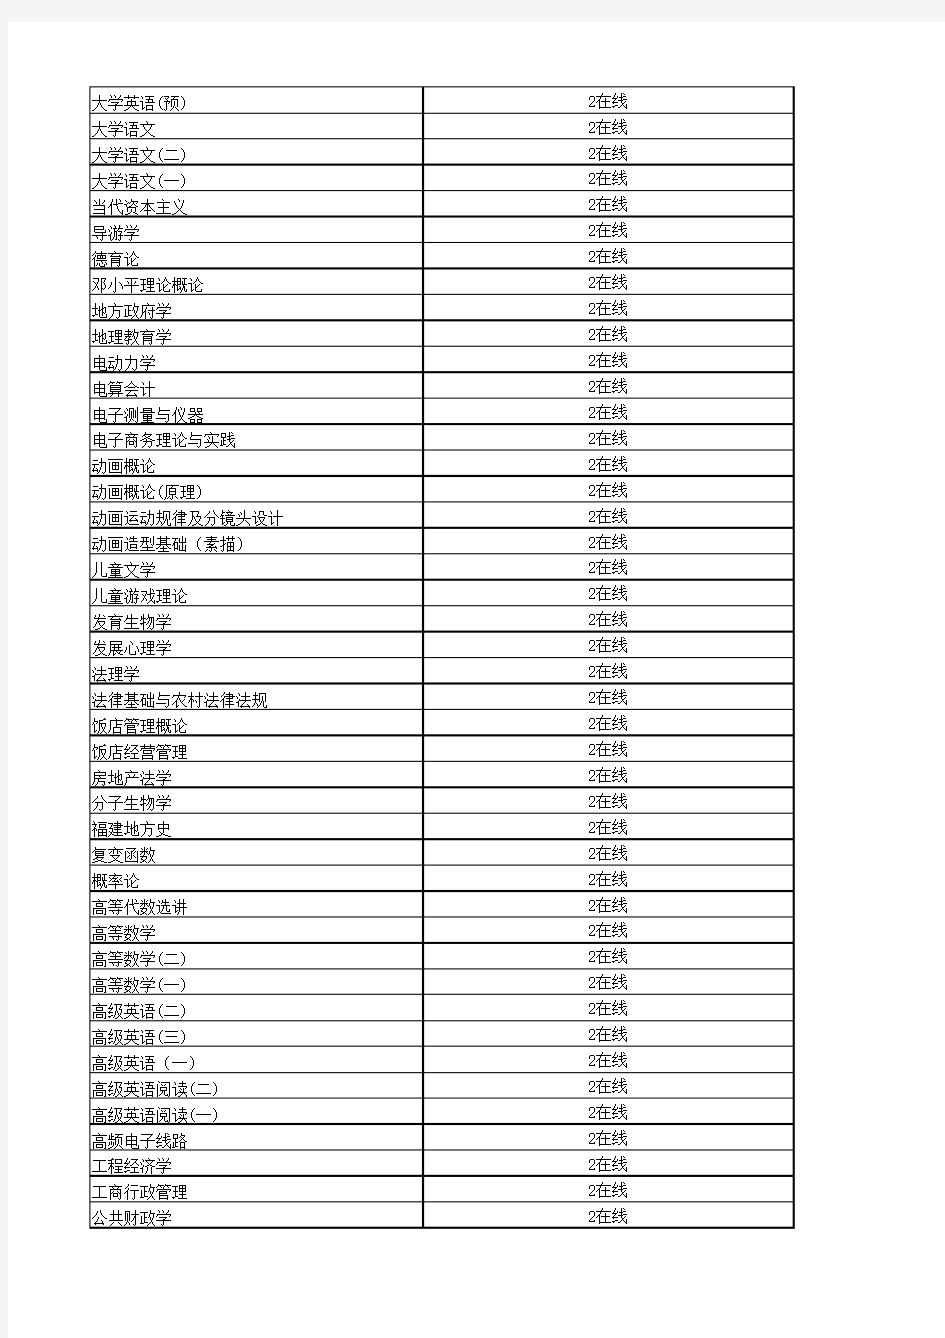 福建师范大学2014年秋学期平时作业一览表